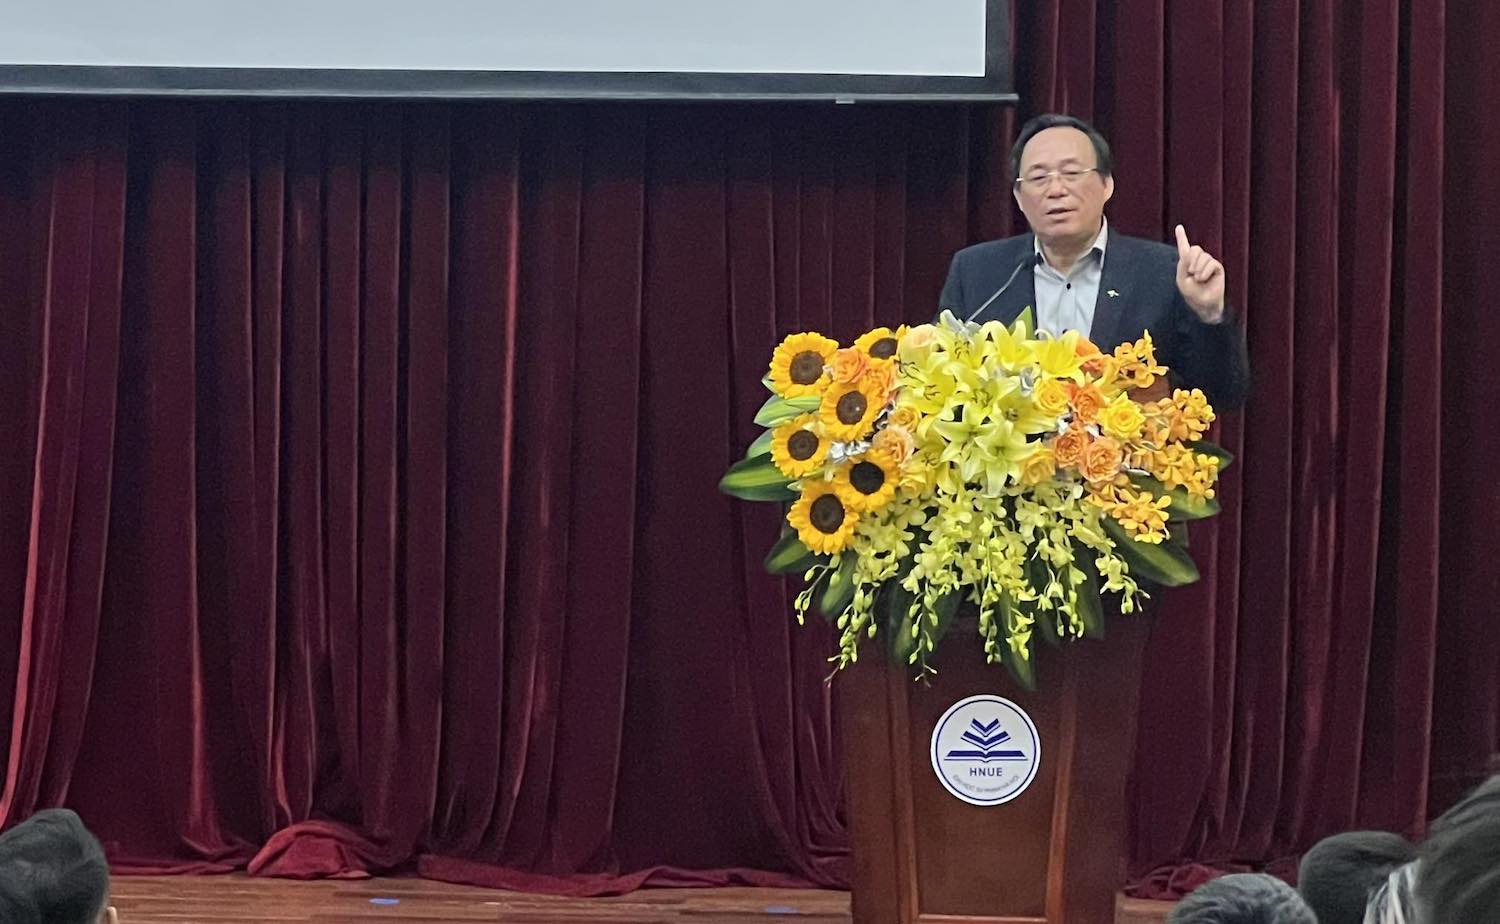 Ông Trần Văn Lam - Phó Vụ trưởng Vụ Giáo dục thể chất phát biểu tại buổi họp báo. Ảnh: An Nguyên